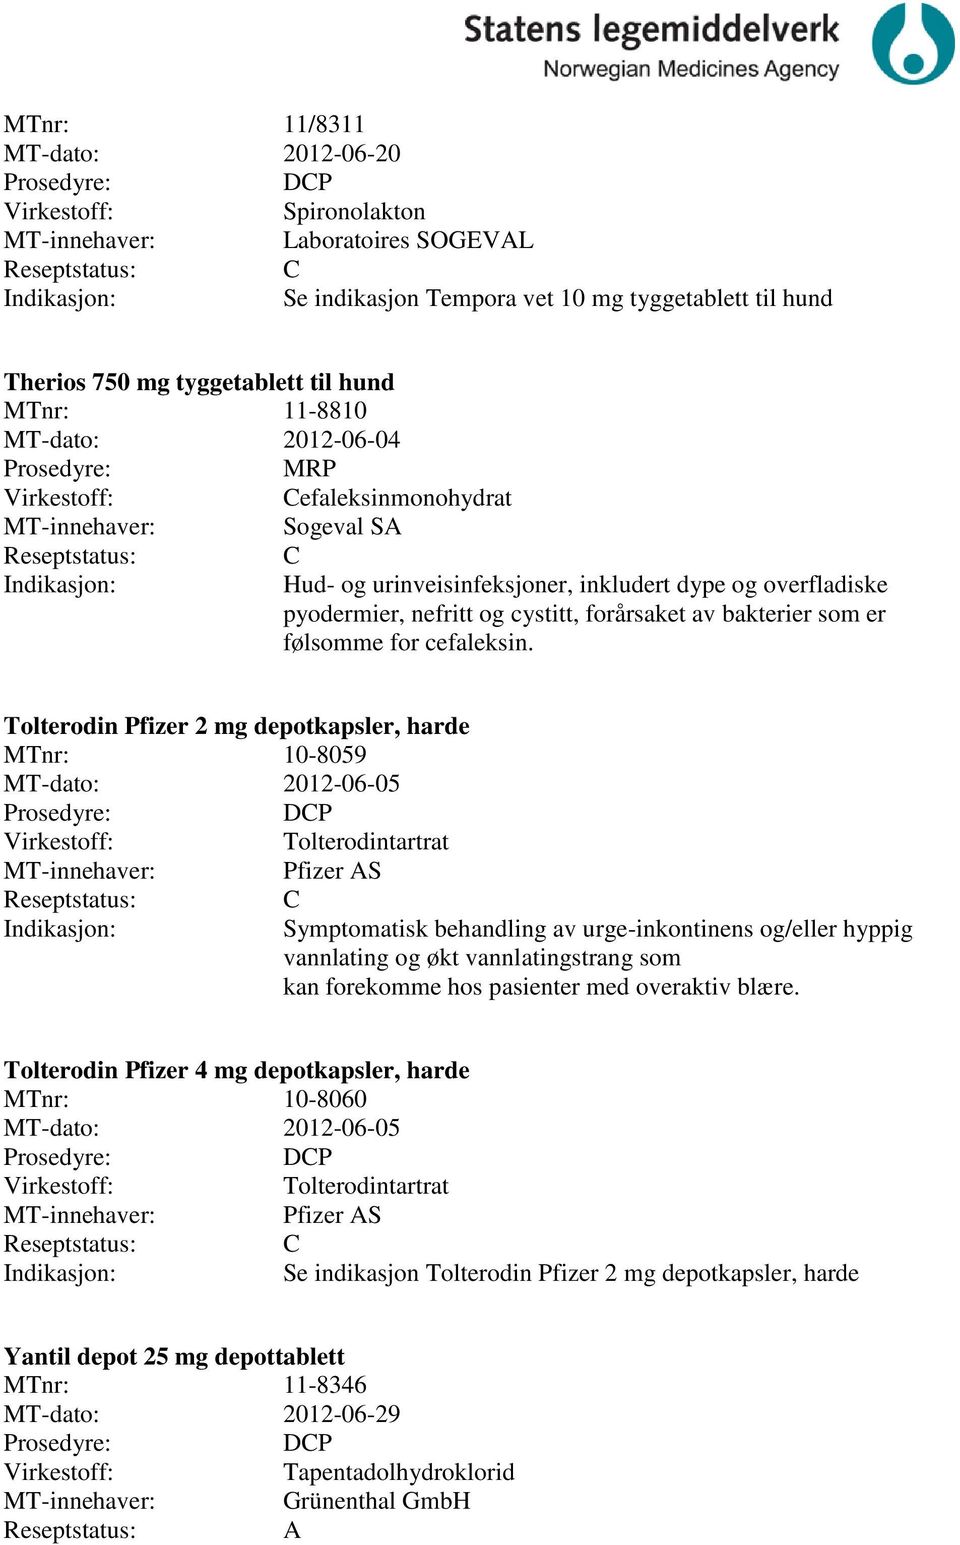 Tolterodin Pfizer 2 mg depotkapsler, harde MTnr: 10-8059 MT-dato: 2012-06-05 DP Tolterodintartrat Pfizer AS Symptomatisk behandling av urge-inkontinens og/eller hyppig vannlating og økt